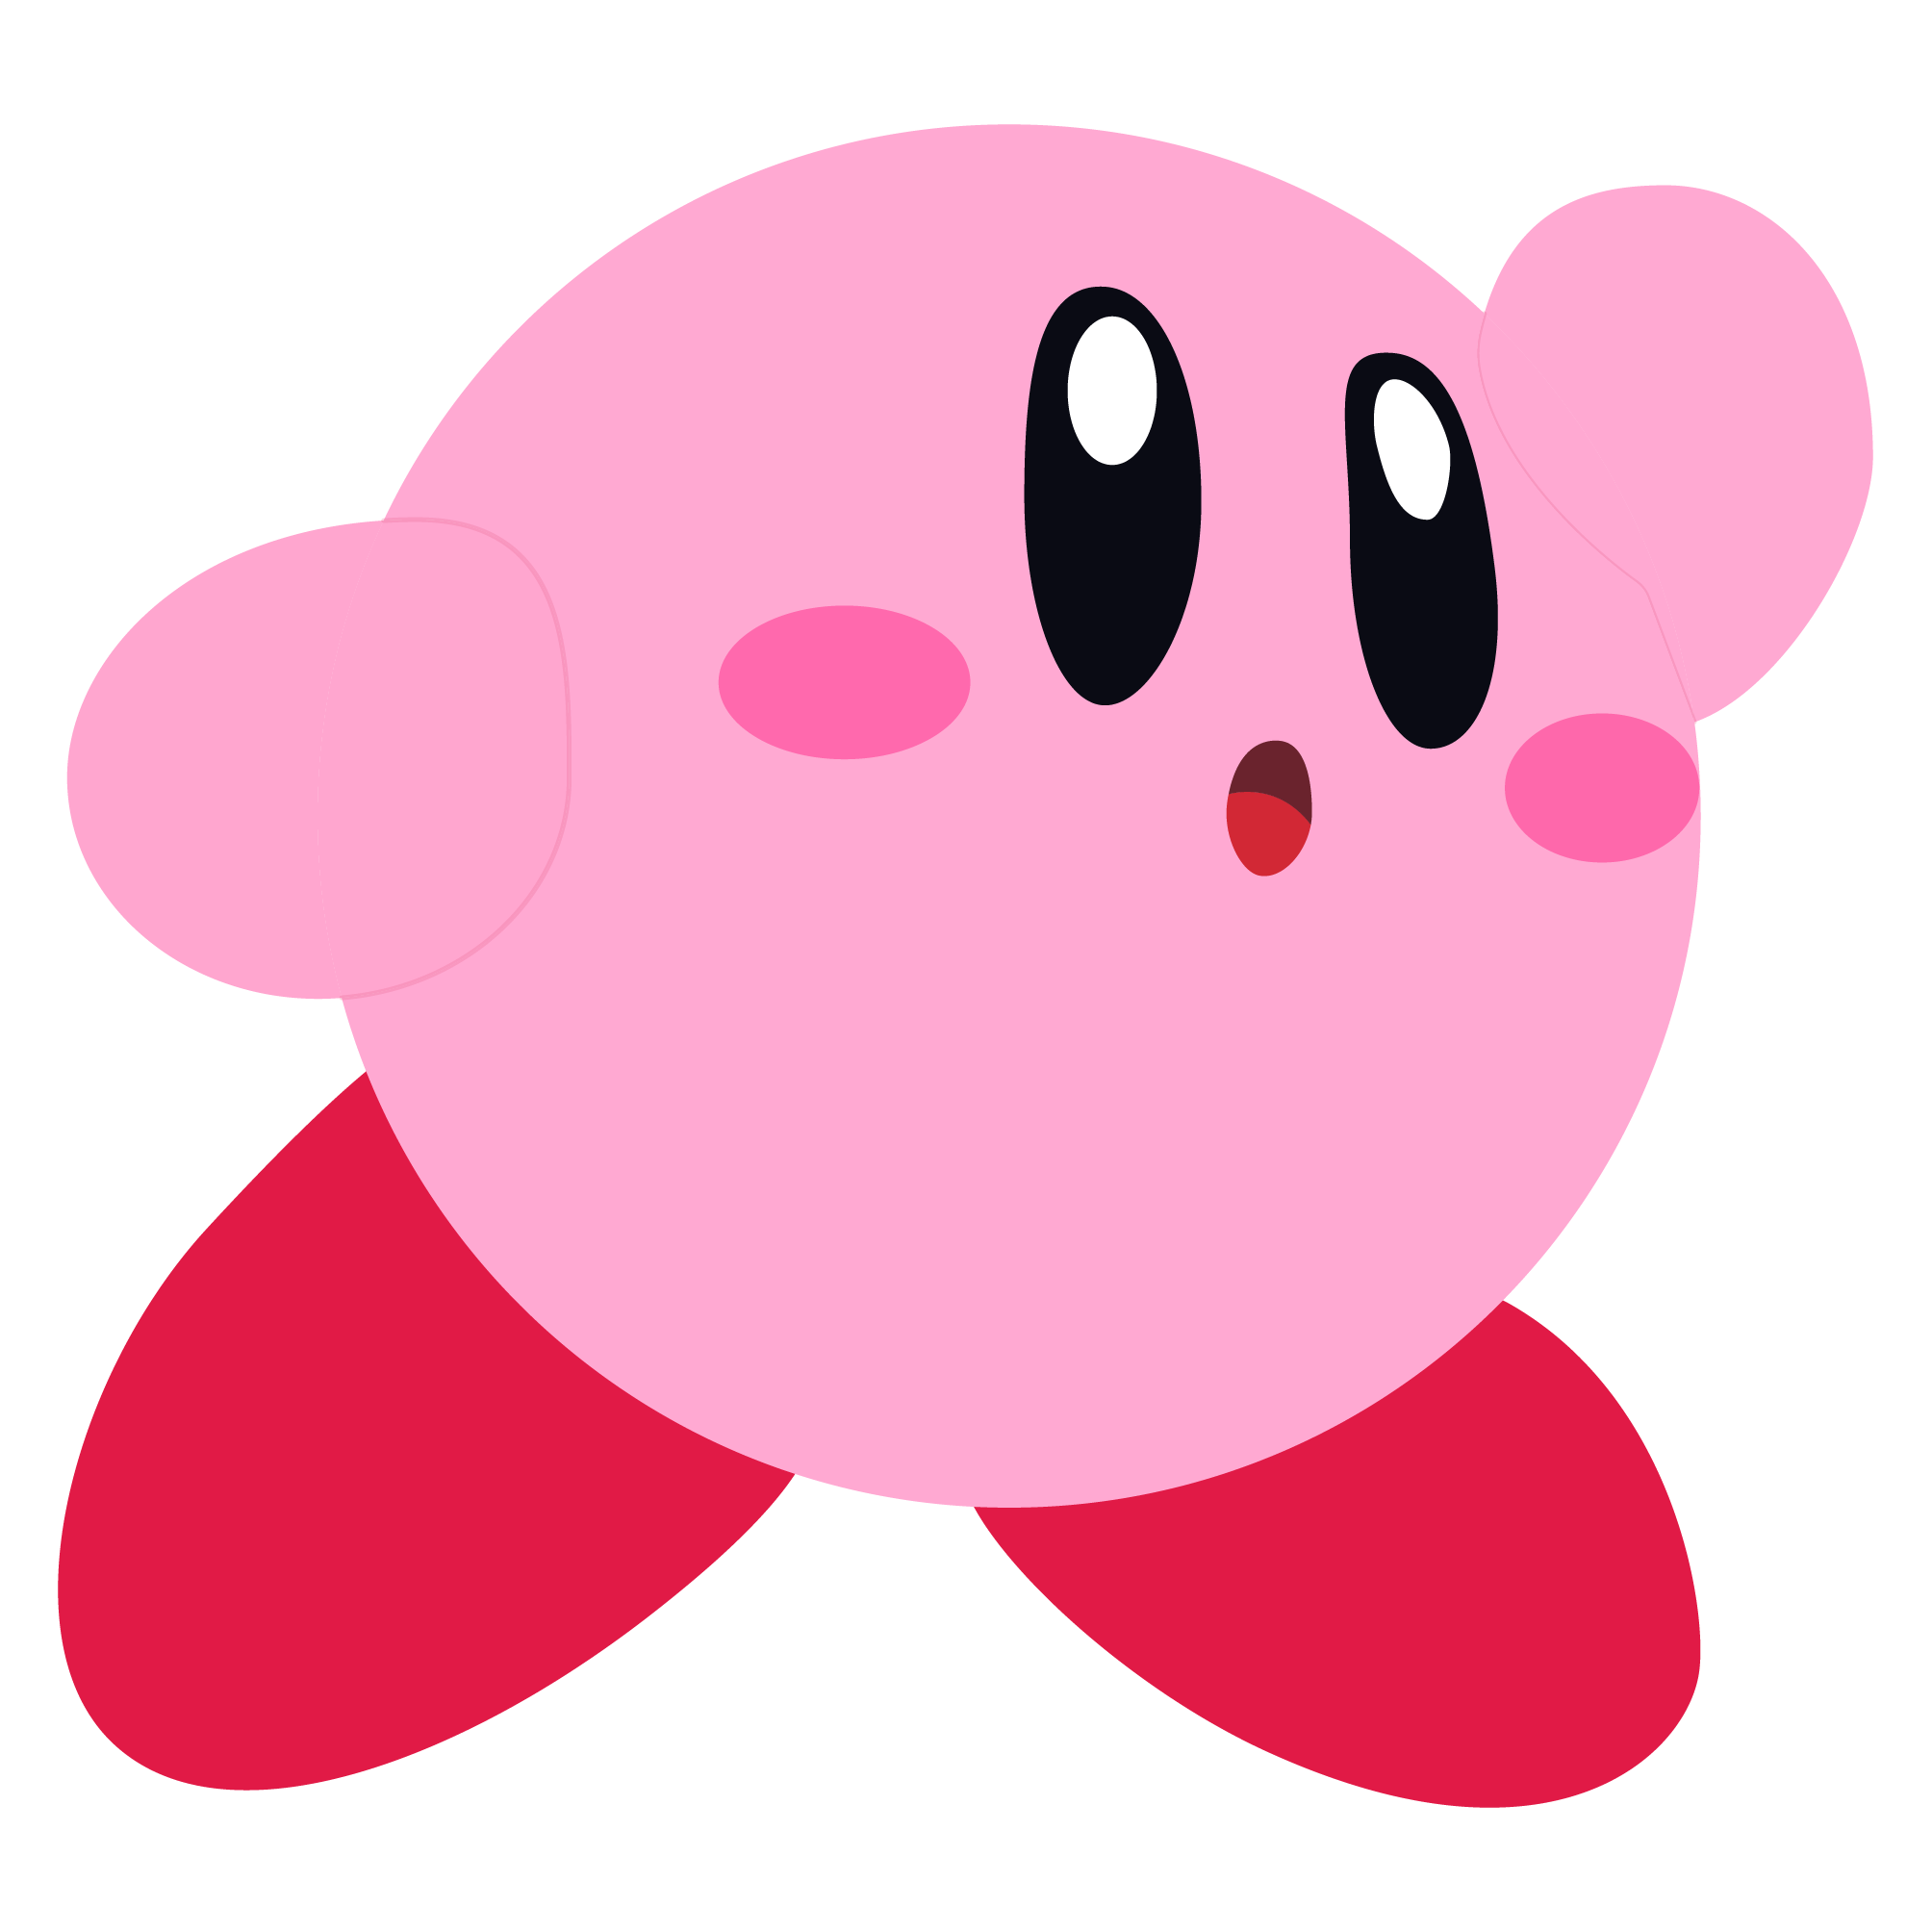 Kirby Art by yngams